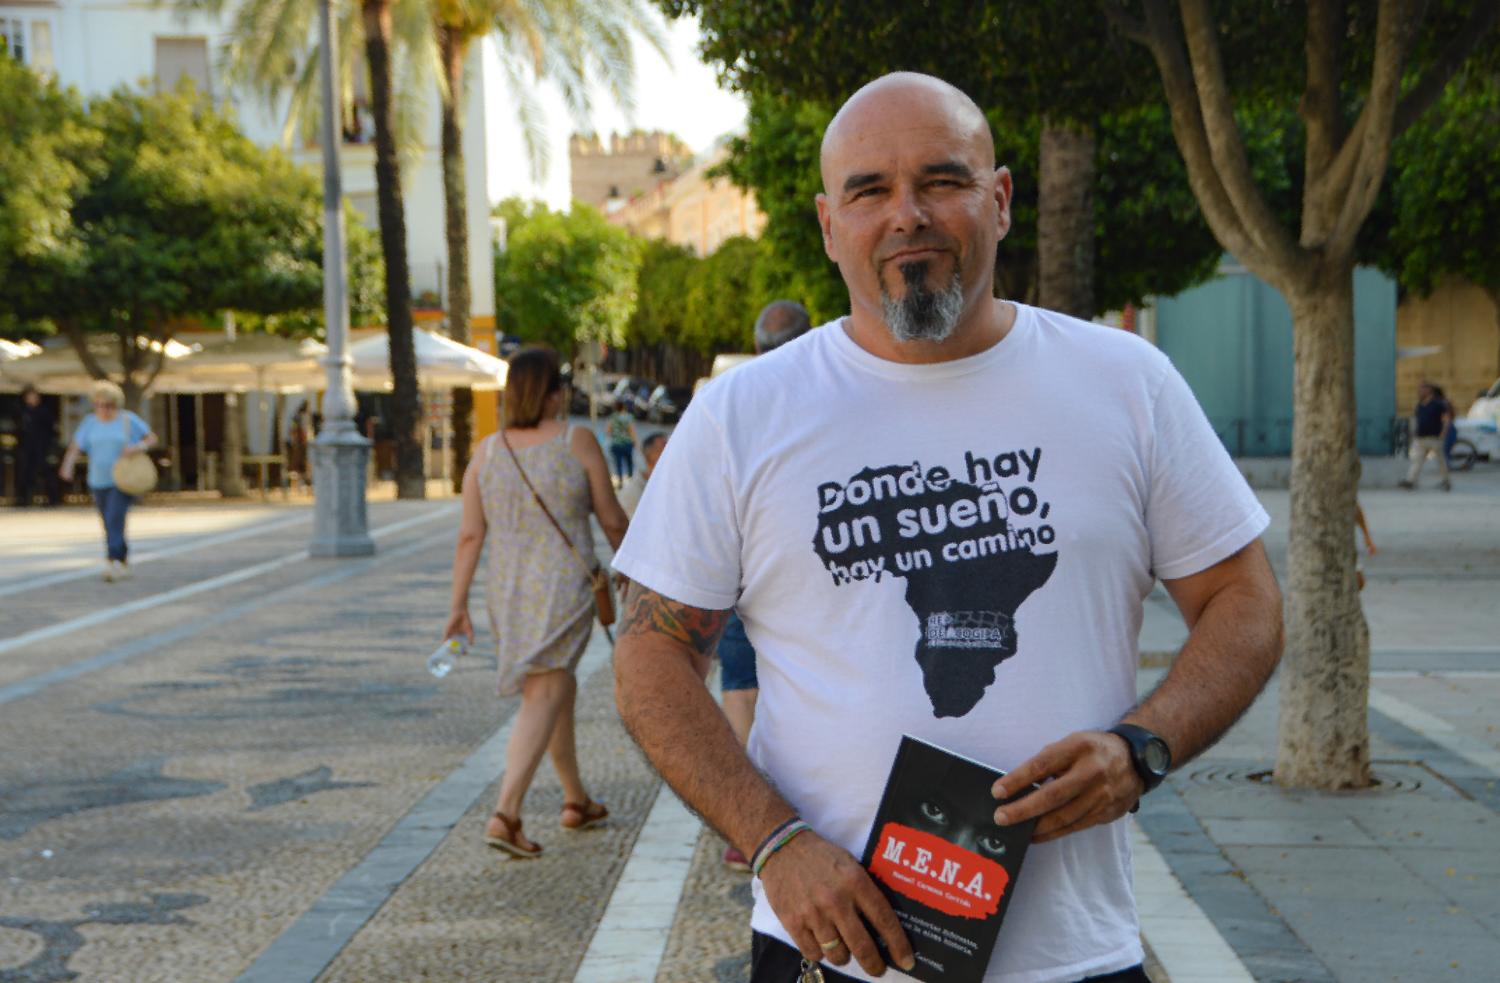 Manuel Carmona, Autor des Buches „M.E. N.A.“, kurz vor der Präsentation in Jerez. Foto: Alejandro Lopez Menacho